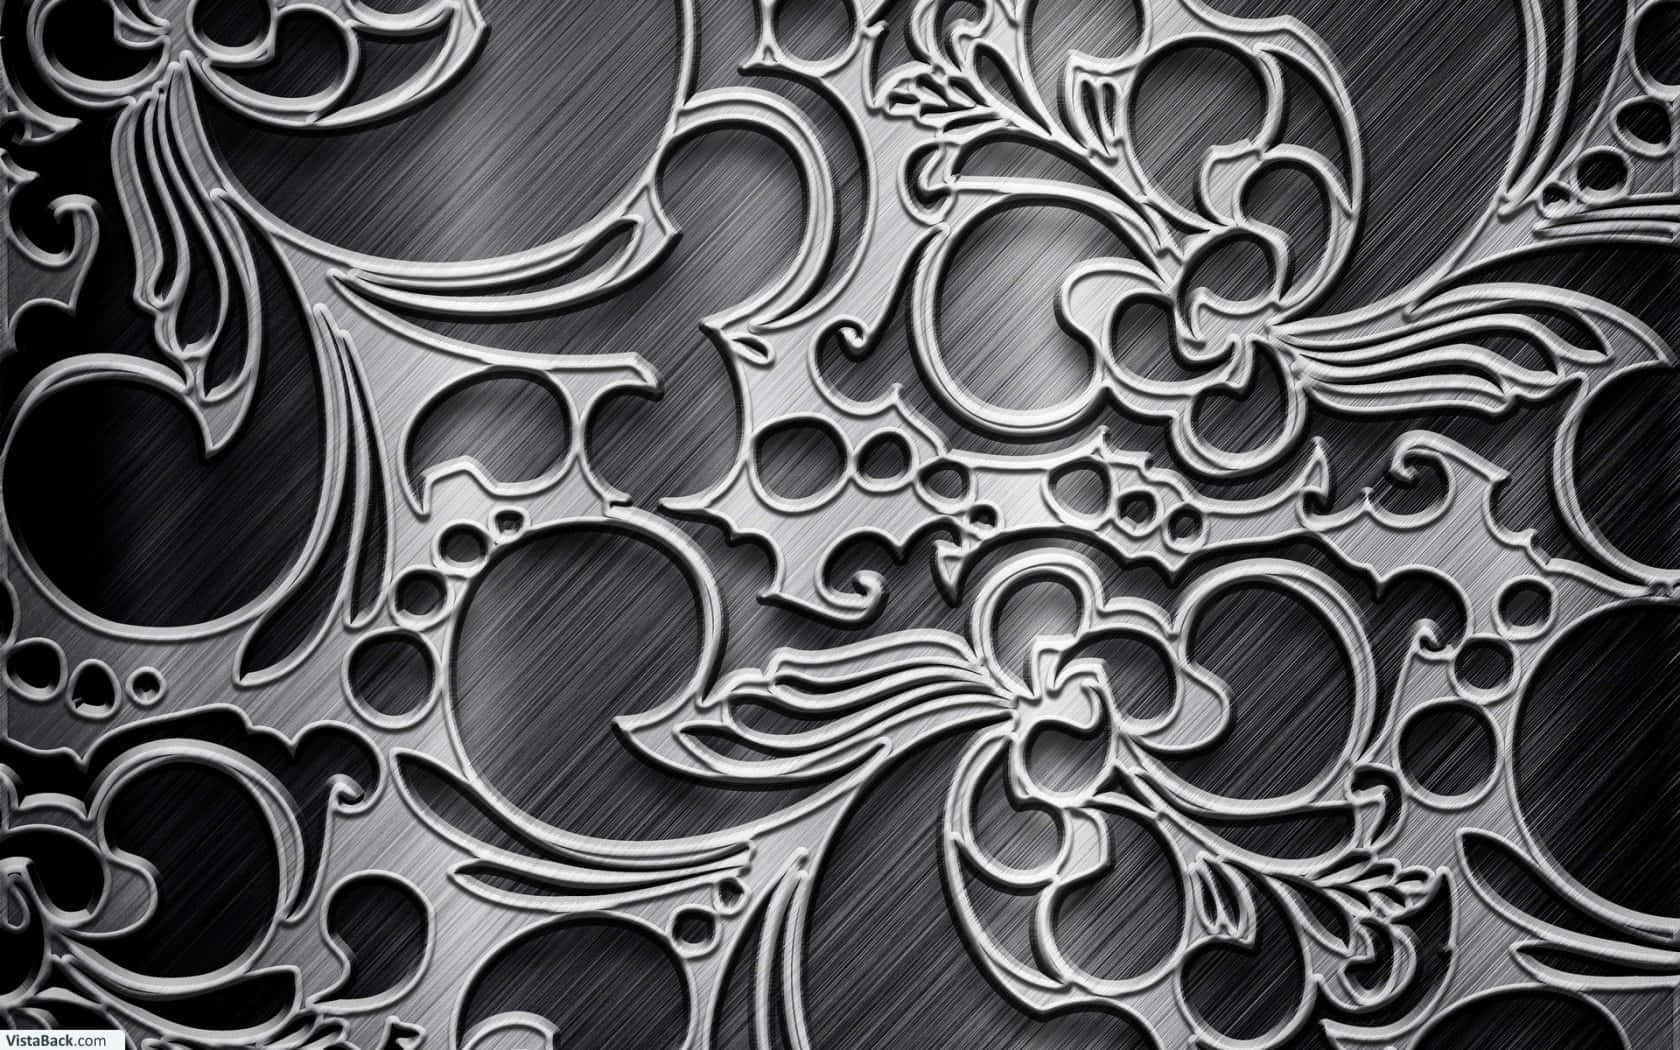 Denne glansede sorte metal finish stråler en minimal endnu fængslende skønhed. Wallpaper